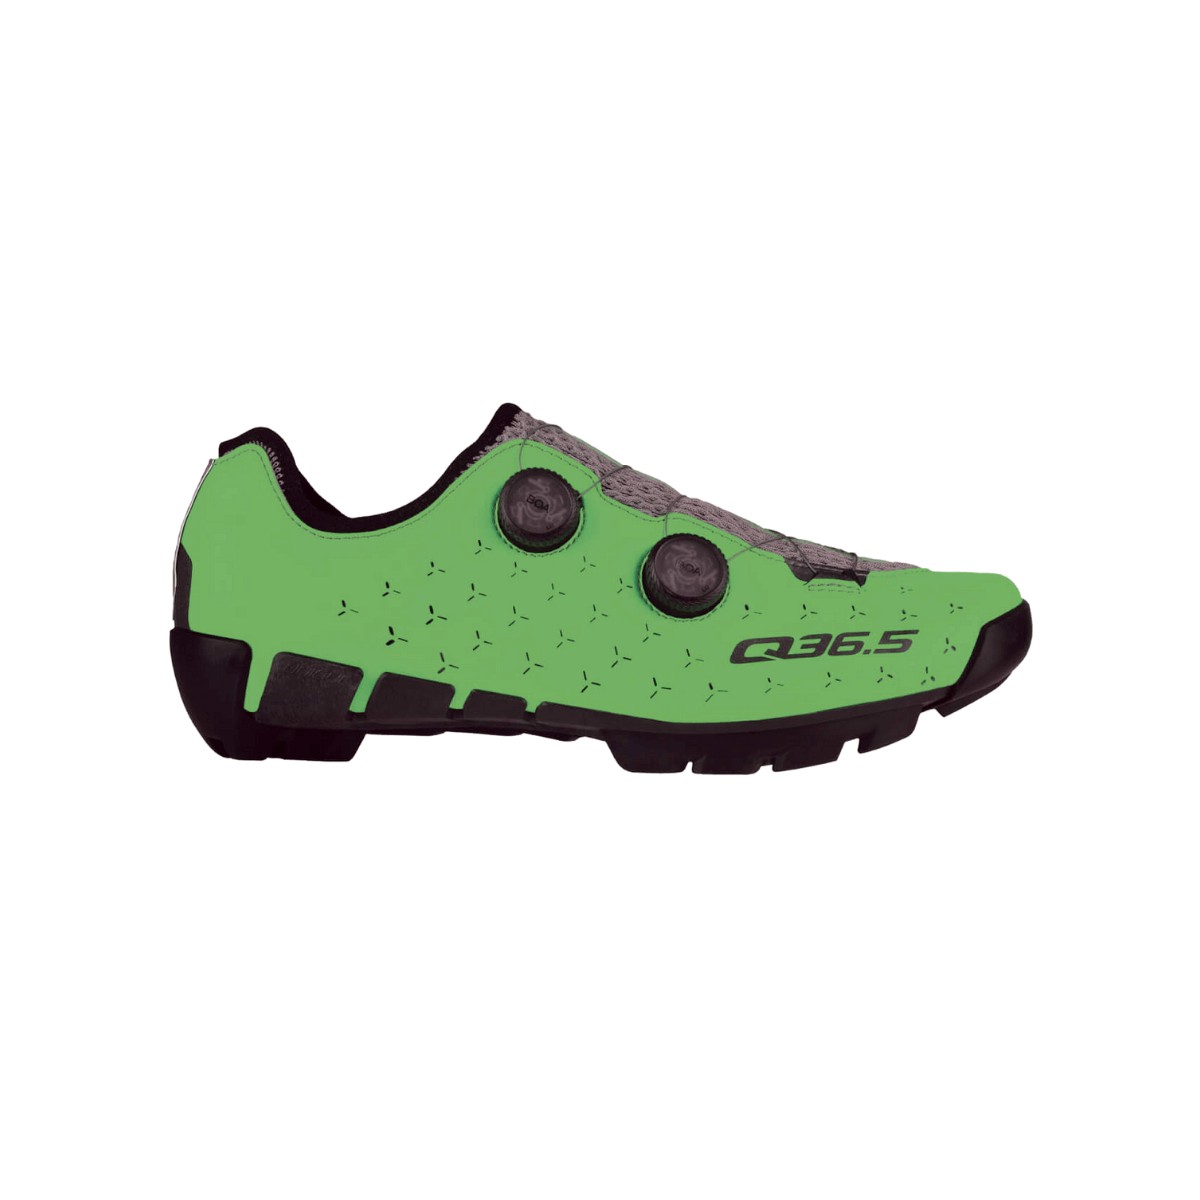 Zapatillas Q36.5 Unique Adventure Verde Fluor, Talla 42 - EUR